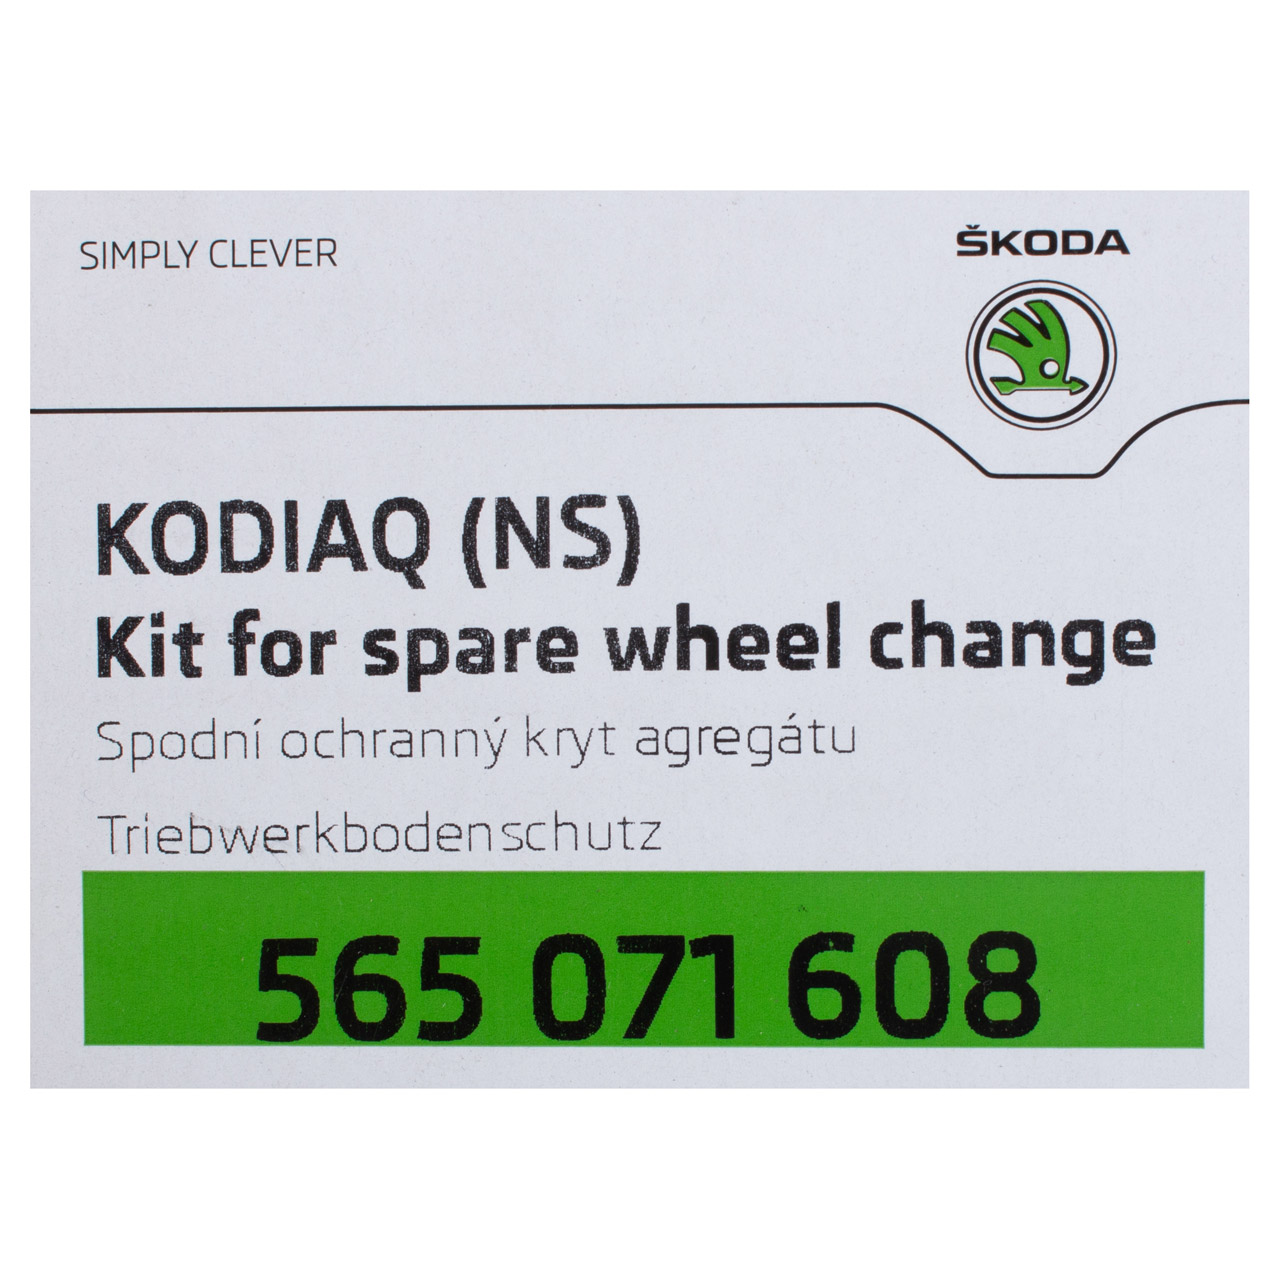 ORIGINAL Skoda Unterfahrschutz Unterbodenschutz Motor Benziner Kodiaq 565071608